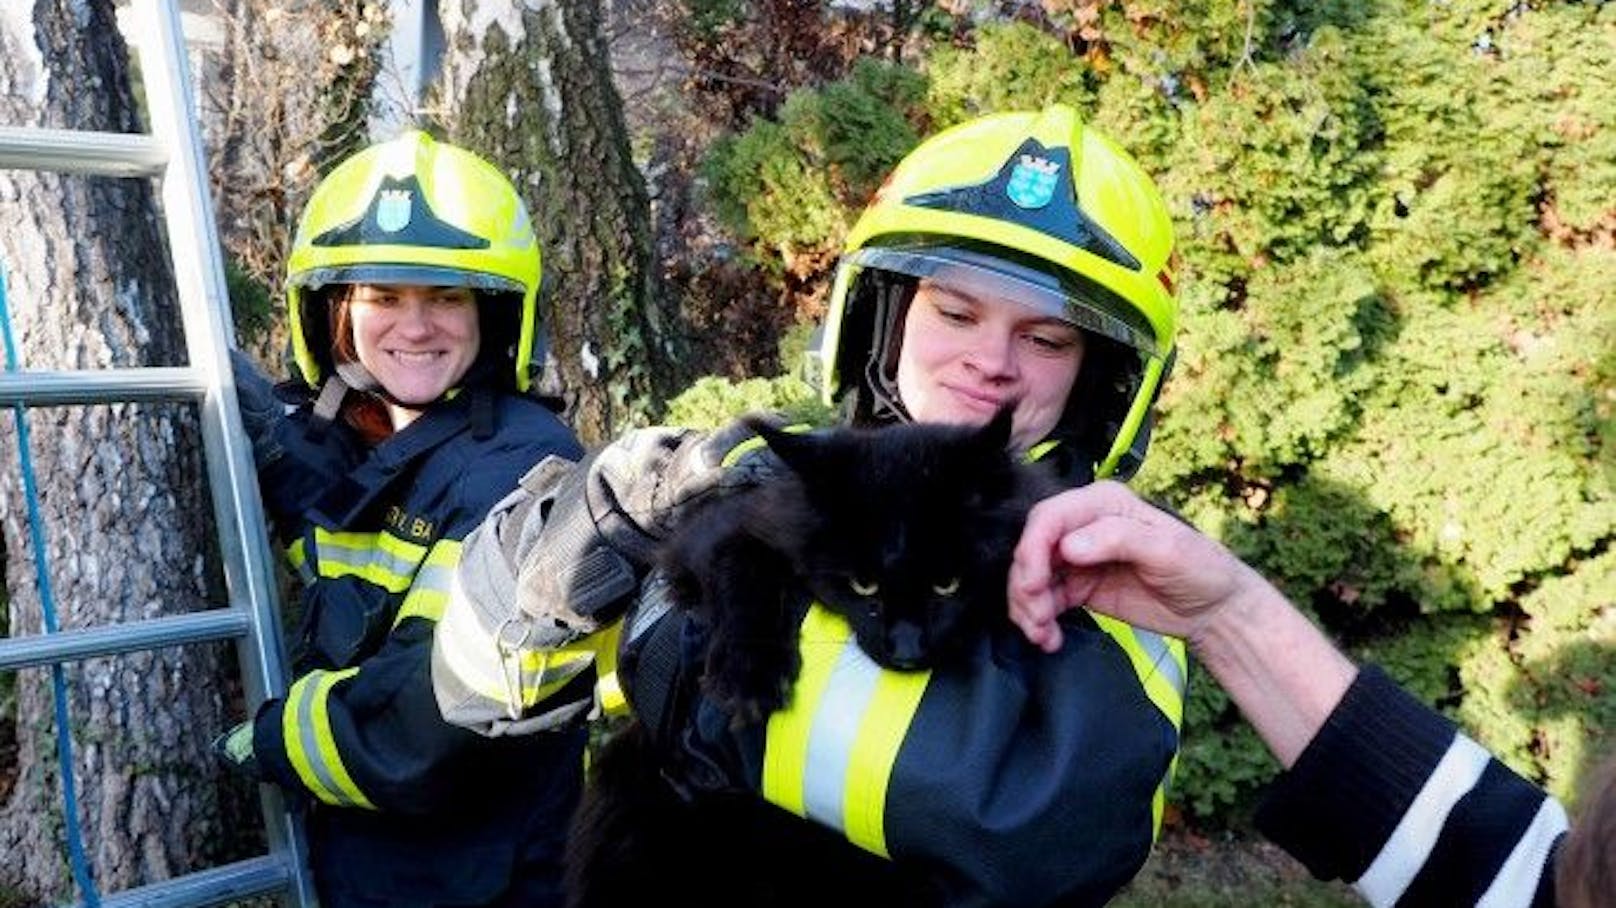 Feuerwehr rettete Katze! Samtpfote lief zum Dank davon